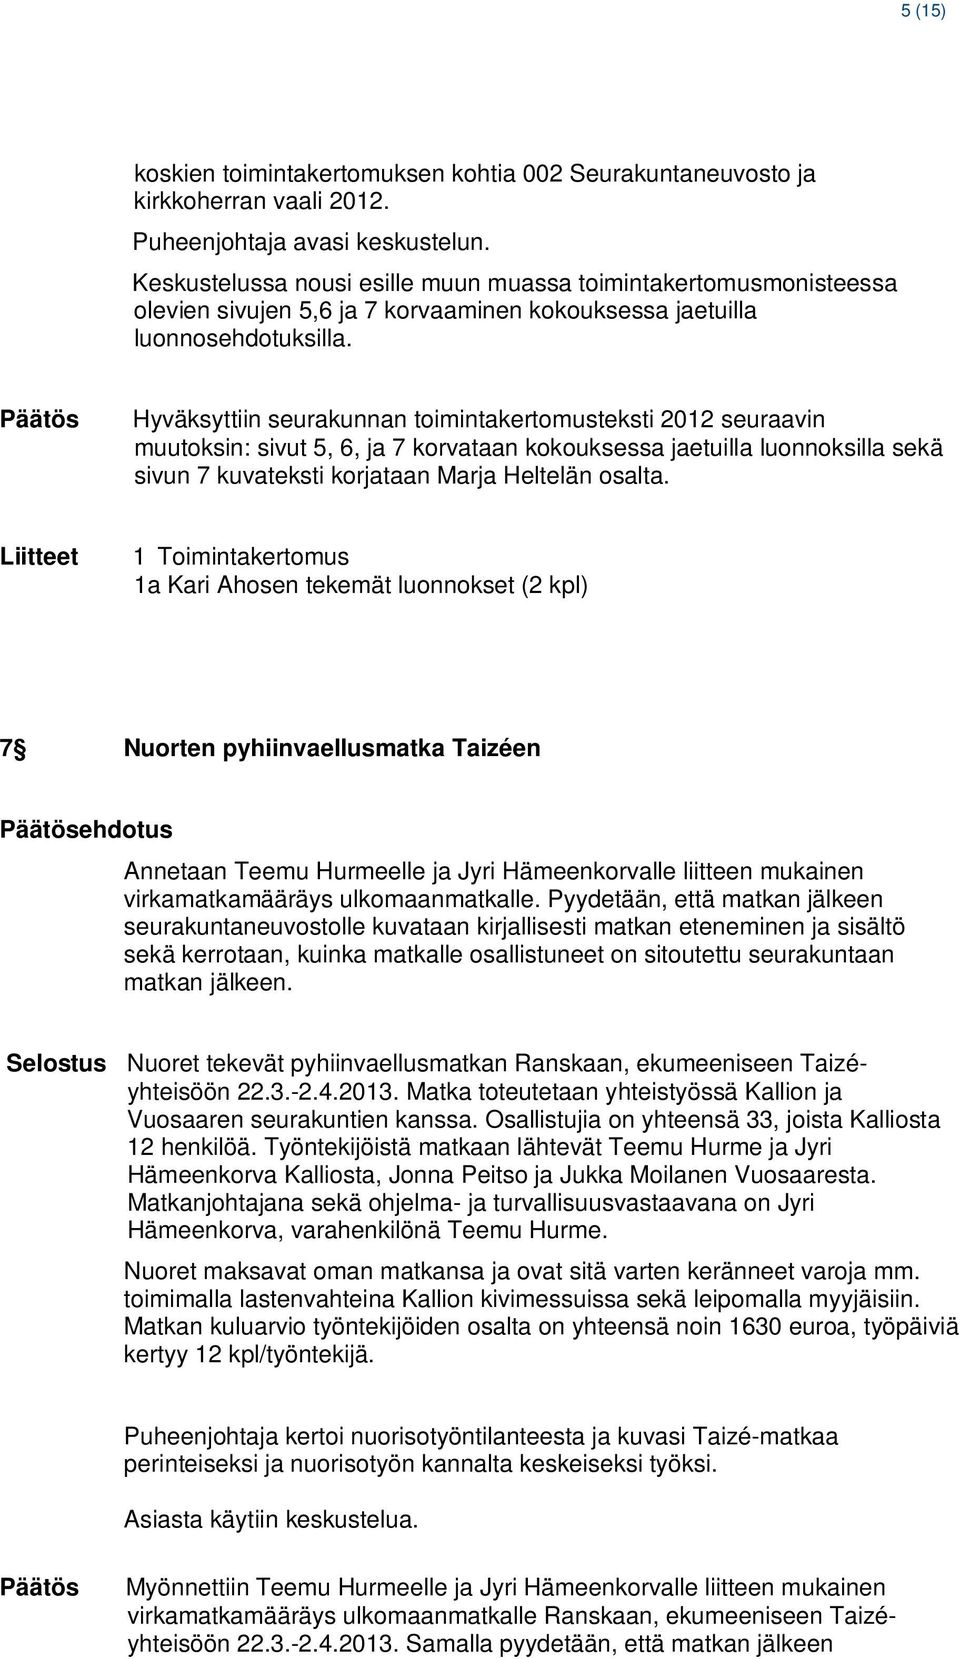 Hyväksyttiin seurakunnan toimintakertomusteksti 2012 seuraavin muutoksin: sivut 5, 6, ja 7 korvataan kokouksessa jaetuilla luonnoksilla sekä sivun 7 kuvateksti korjataan Marja Heltelän osalta.